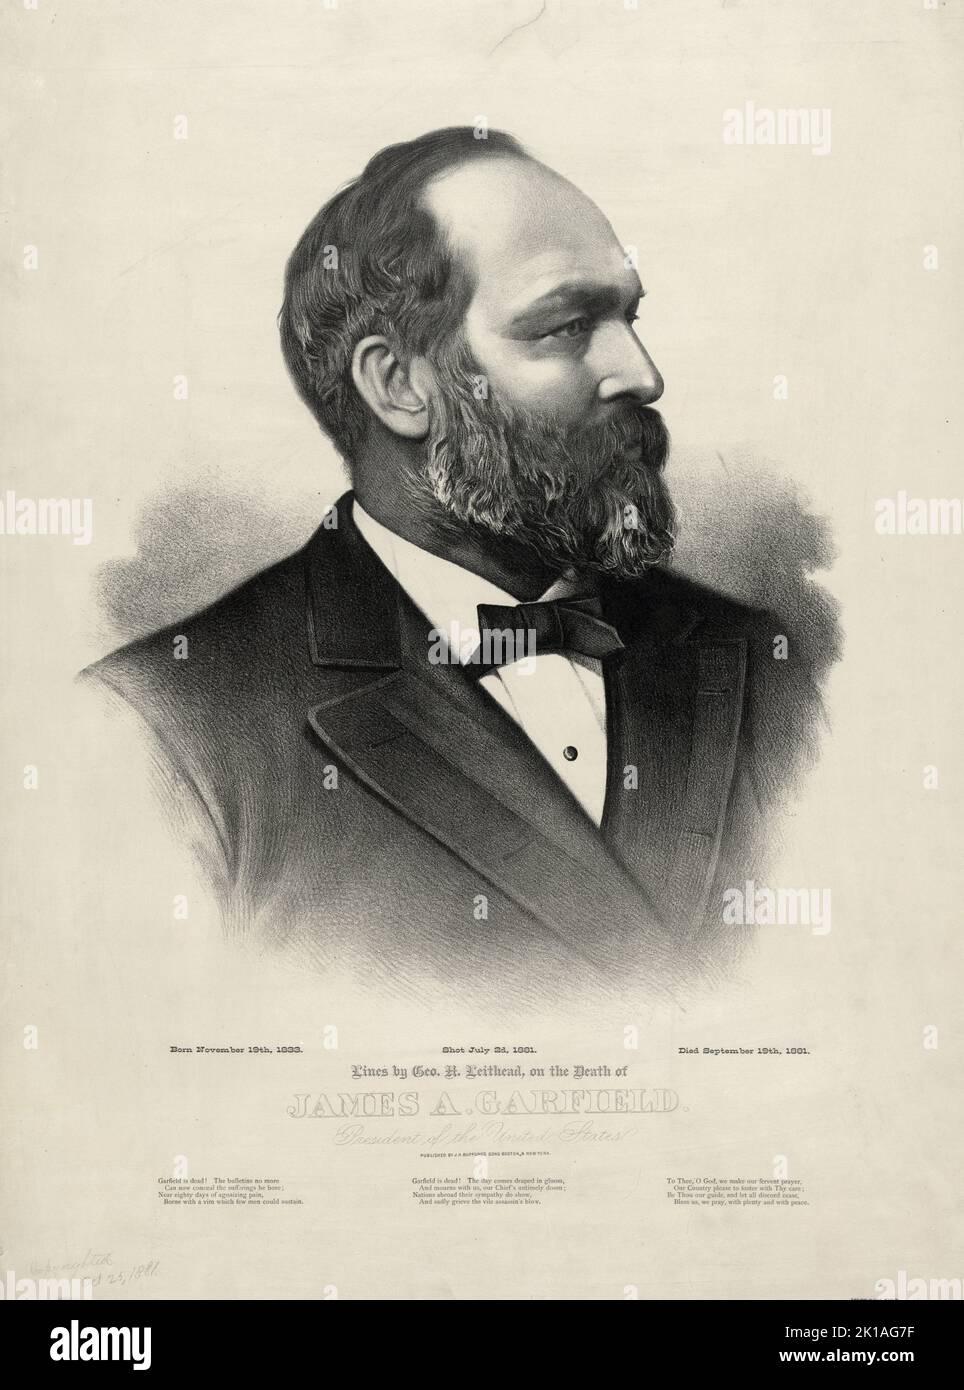 Ein Porträt des US-Präsidenten James Garfield. Garfield war 20. der Präsident der USA und der zweite, der ermordet wurde. Stockfoto